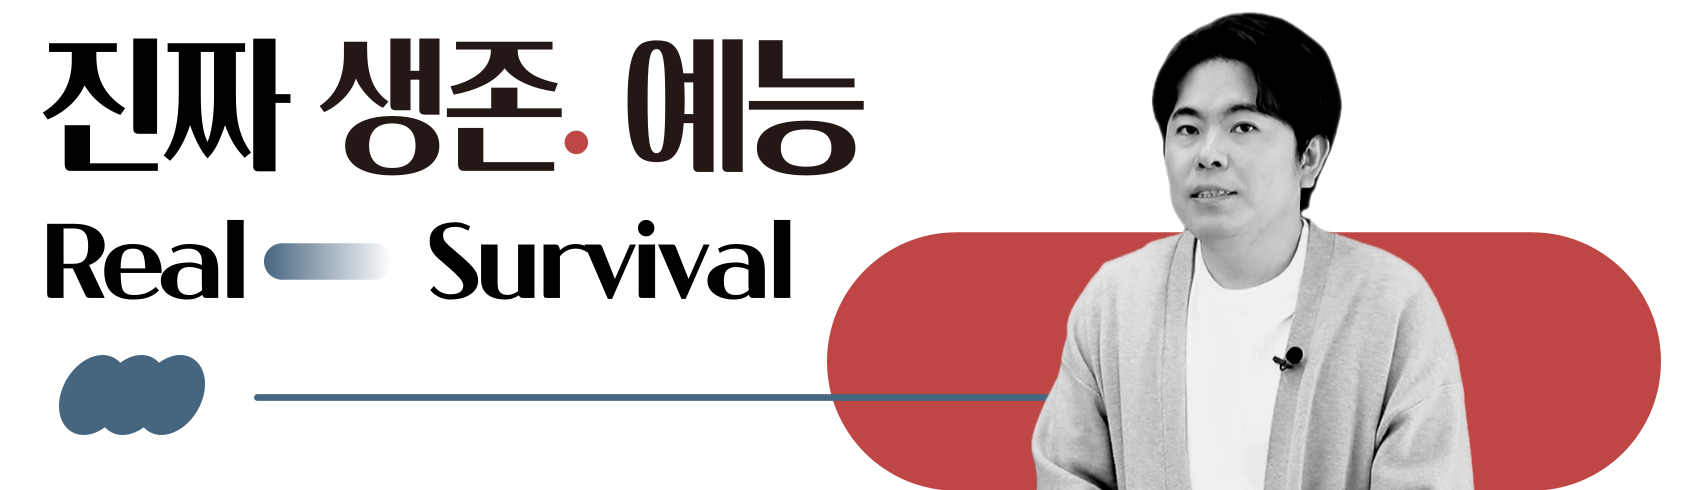 리얼리티 서바이벌 예능 기획·제작, 예측할 수 없는 서사와 반전👀 예능과 드라마를 넘나드는 리얼 생존 서바이벌쇼의 기획과 제작